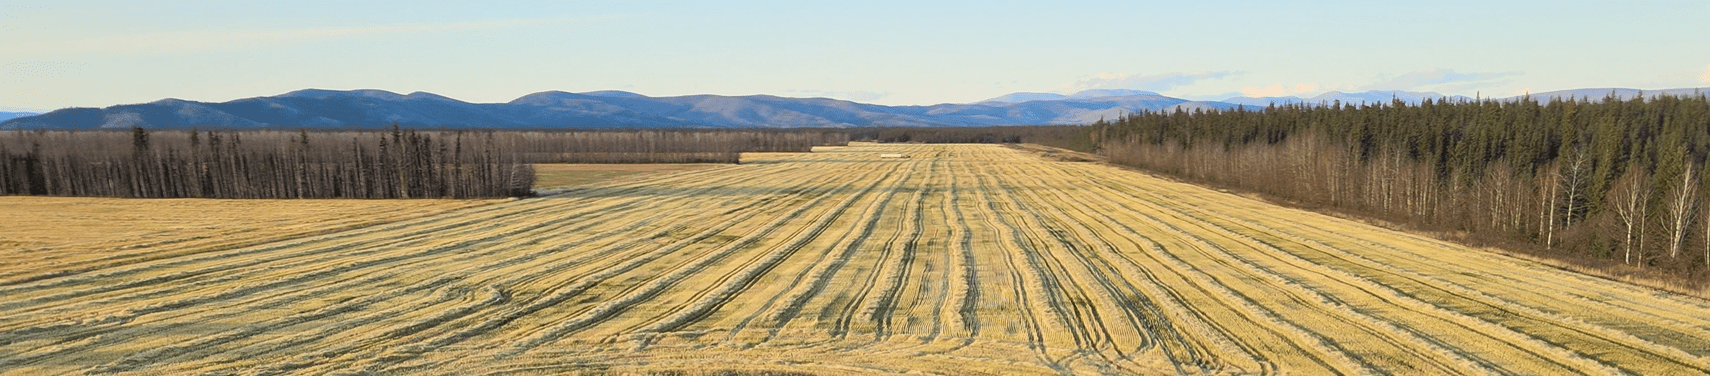 Cut wheat fields alaska schultz farms